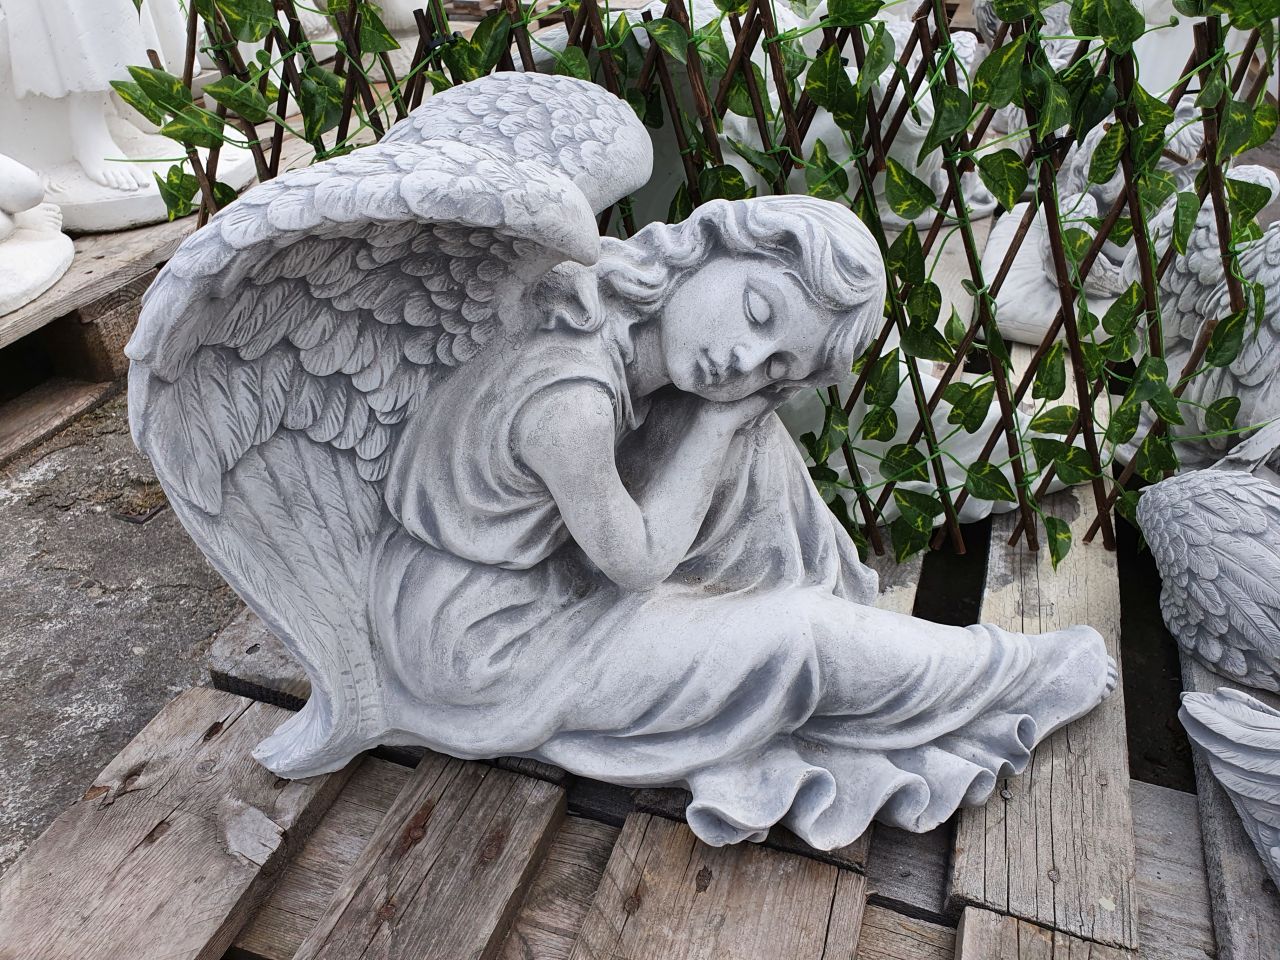 -Gartenfigur Engel an Knie angelehnt- verschiedene Farben- unter Statuen/Skulpturen Edition Elegance